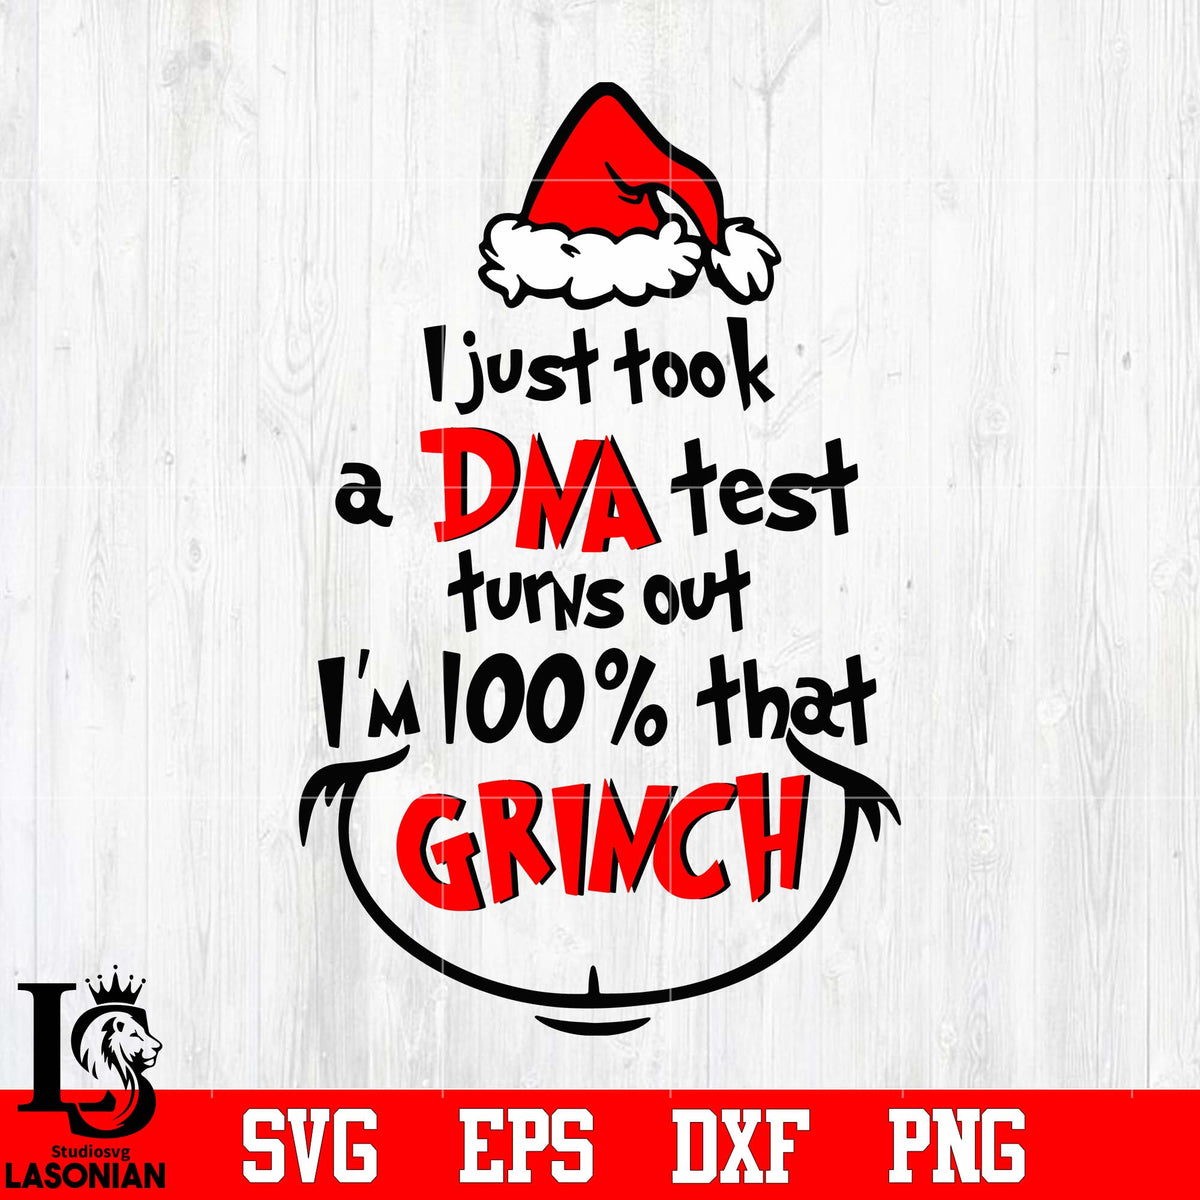 The Grinch Tumbler Ho Ho Ho DNA Test Christmas Gift